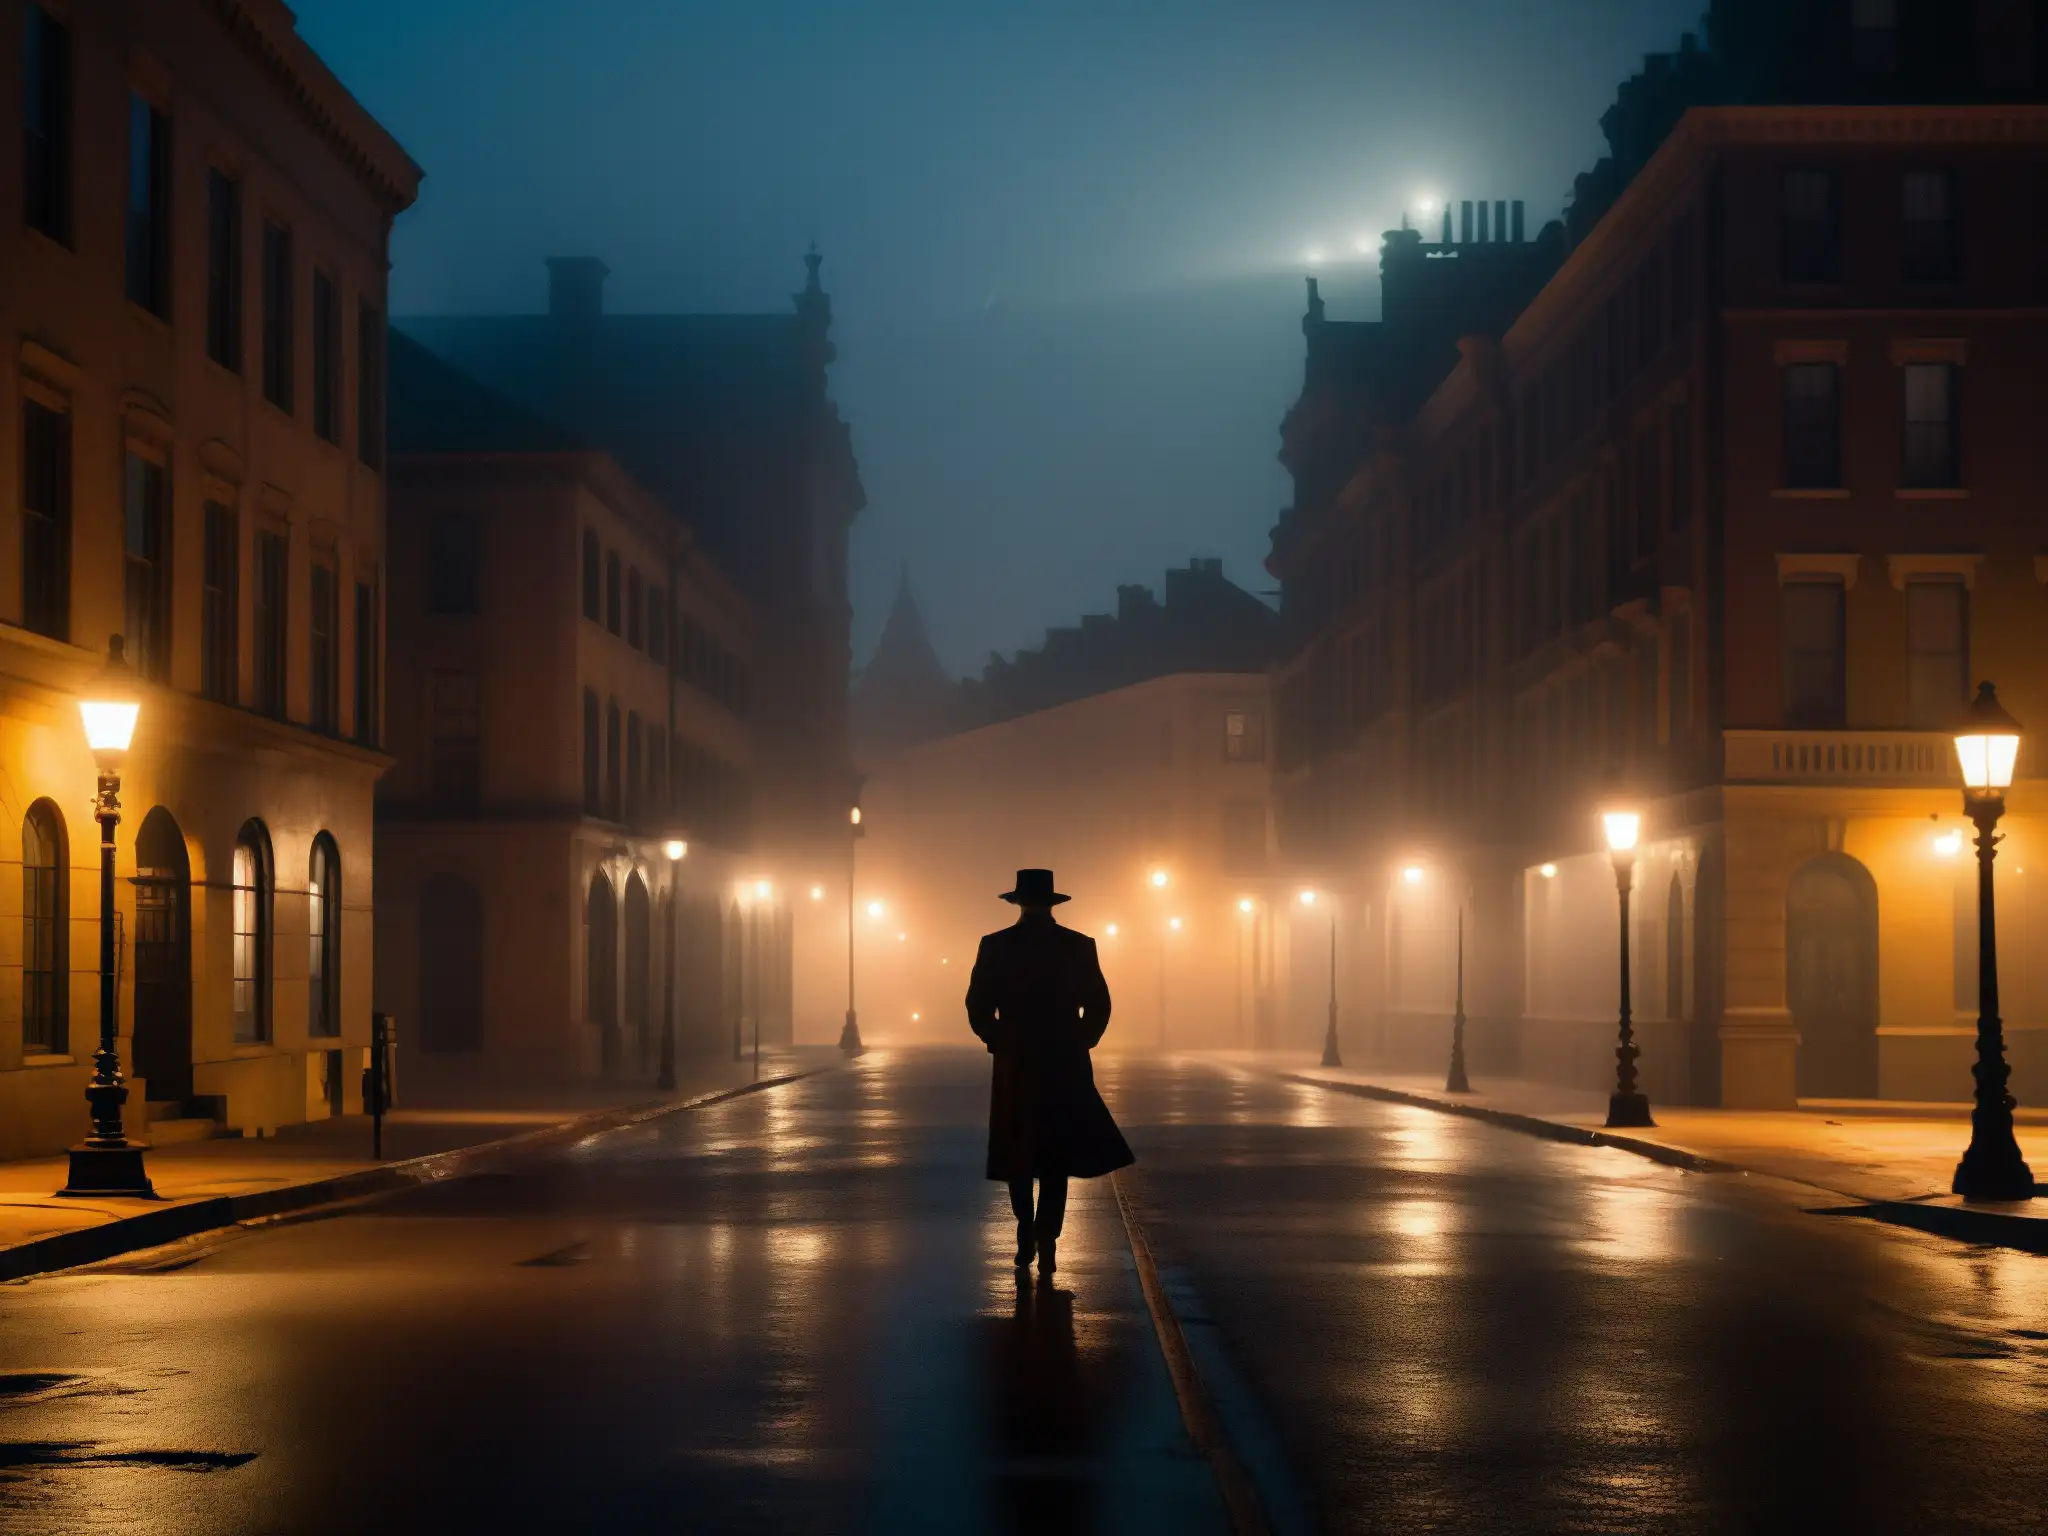 Un misterioso callejón nocturno envuelto en neblina, con sombras proyectadas en viejos edificios